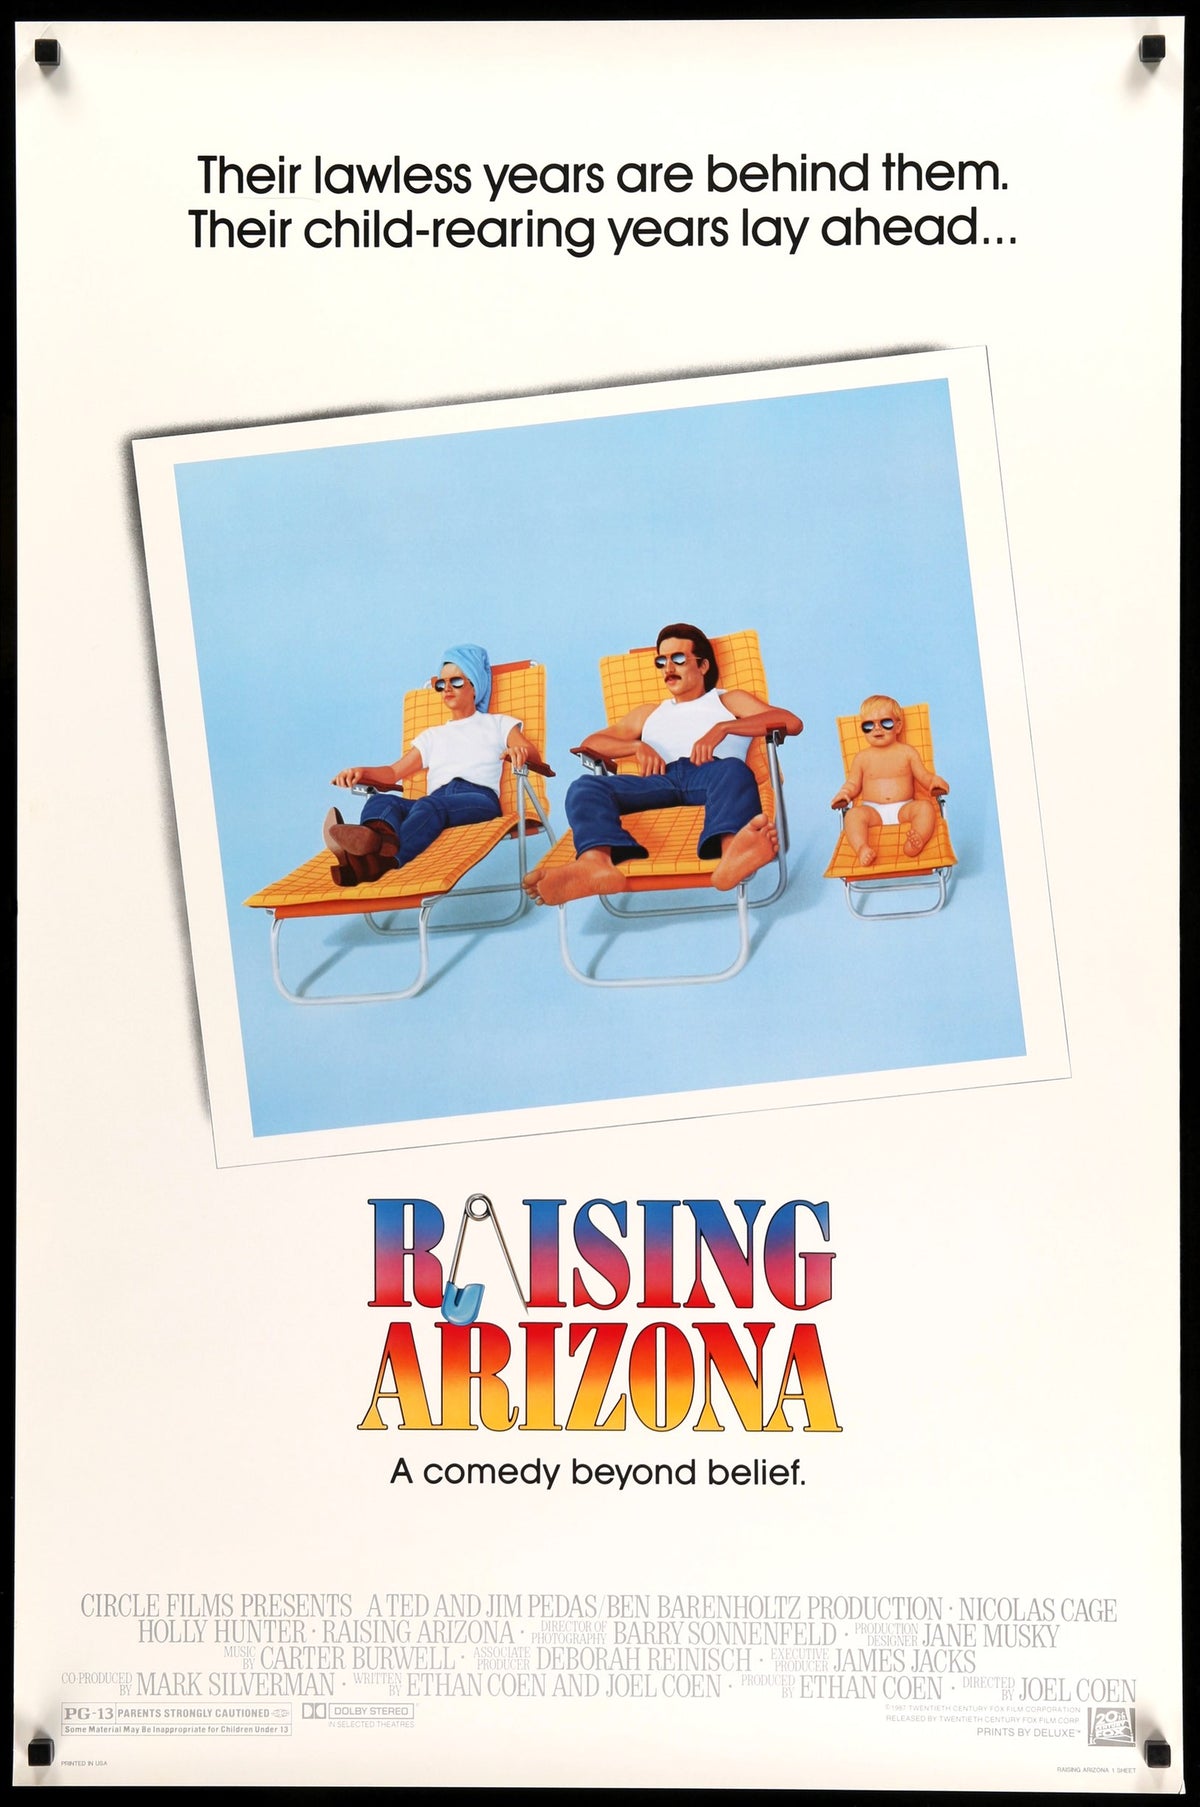 Raising Arizona (1987) original movie poster for sale at Original Film Art